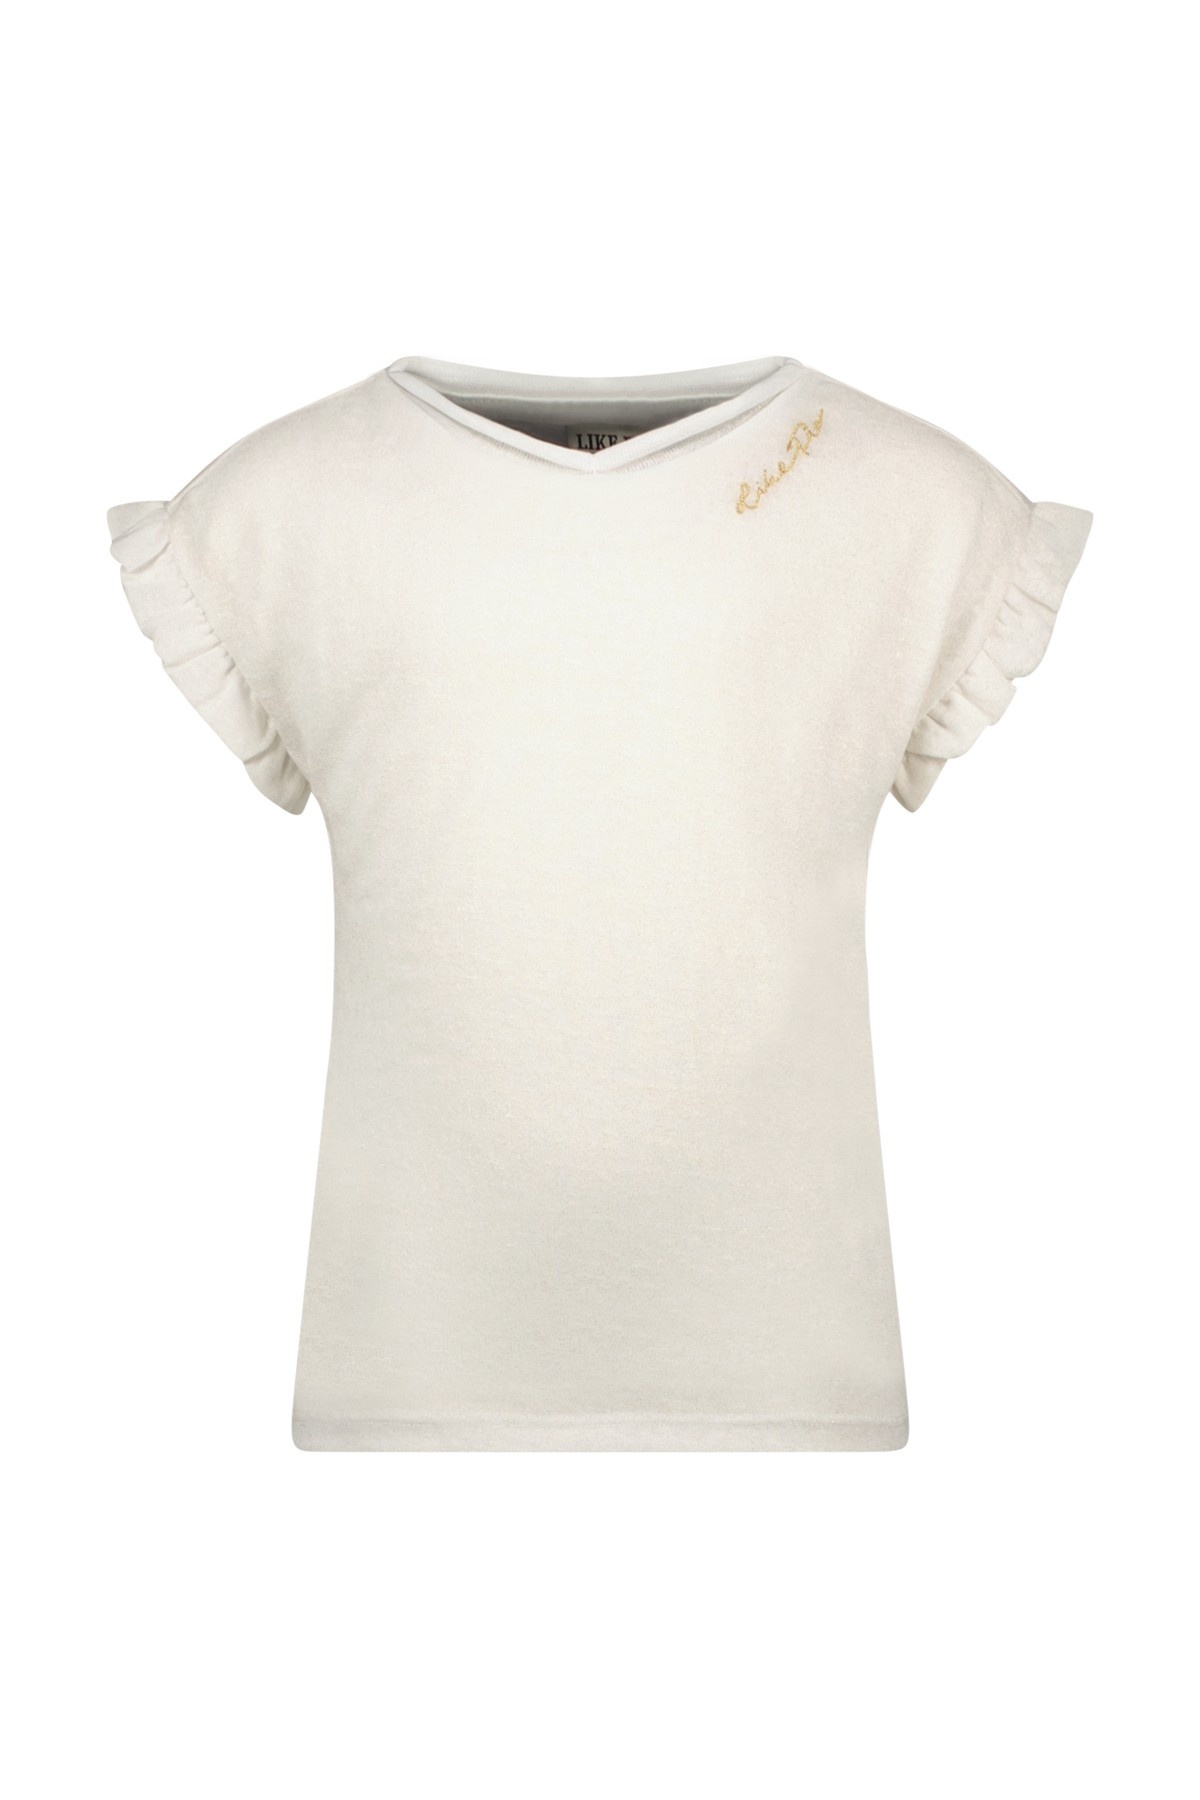 Like Flo F311-5440 Meisjes T-shirt - Off white - Maat 110